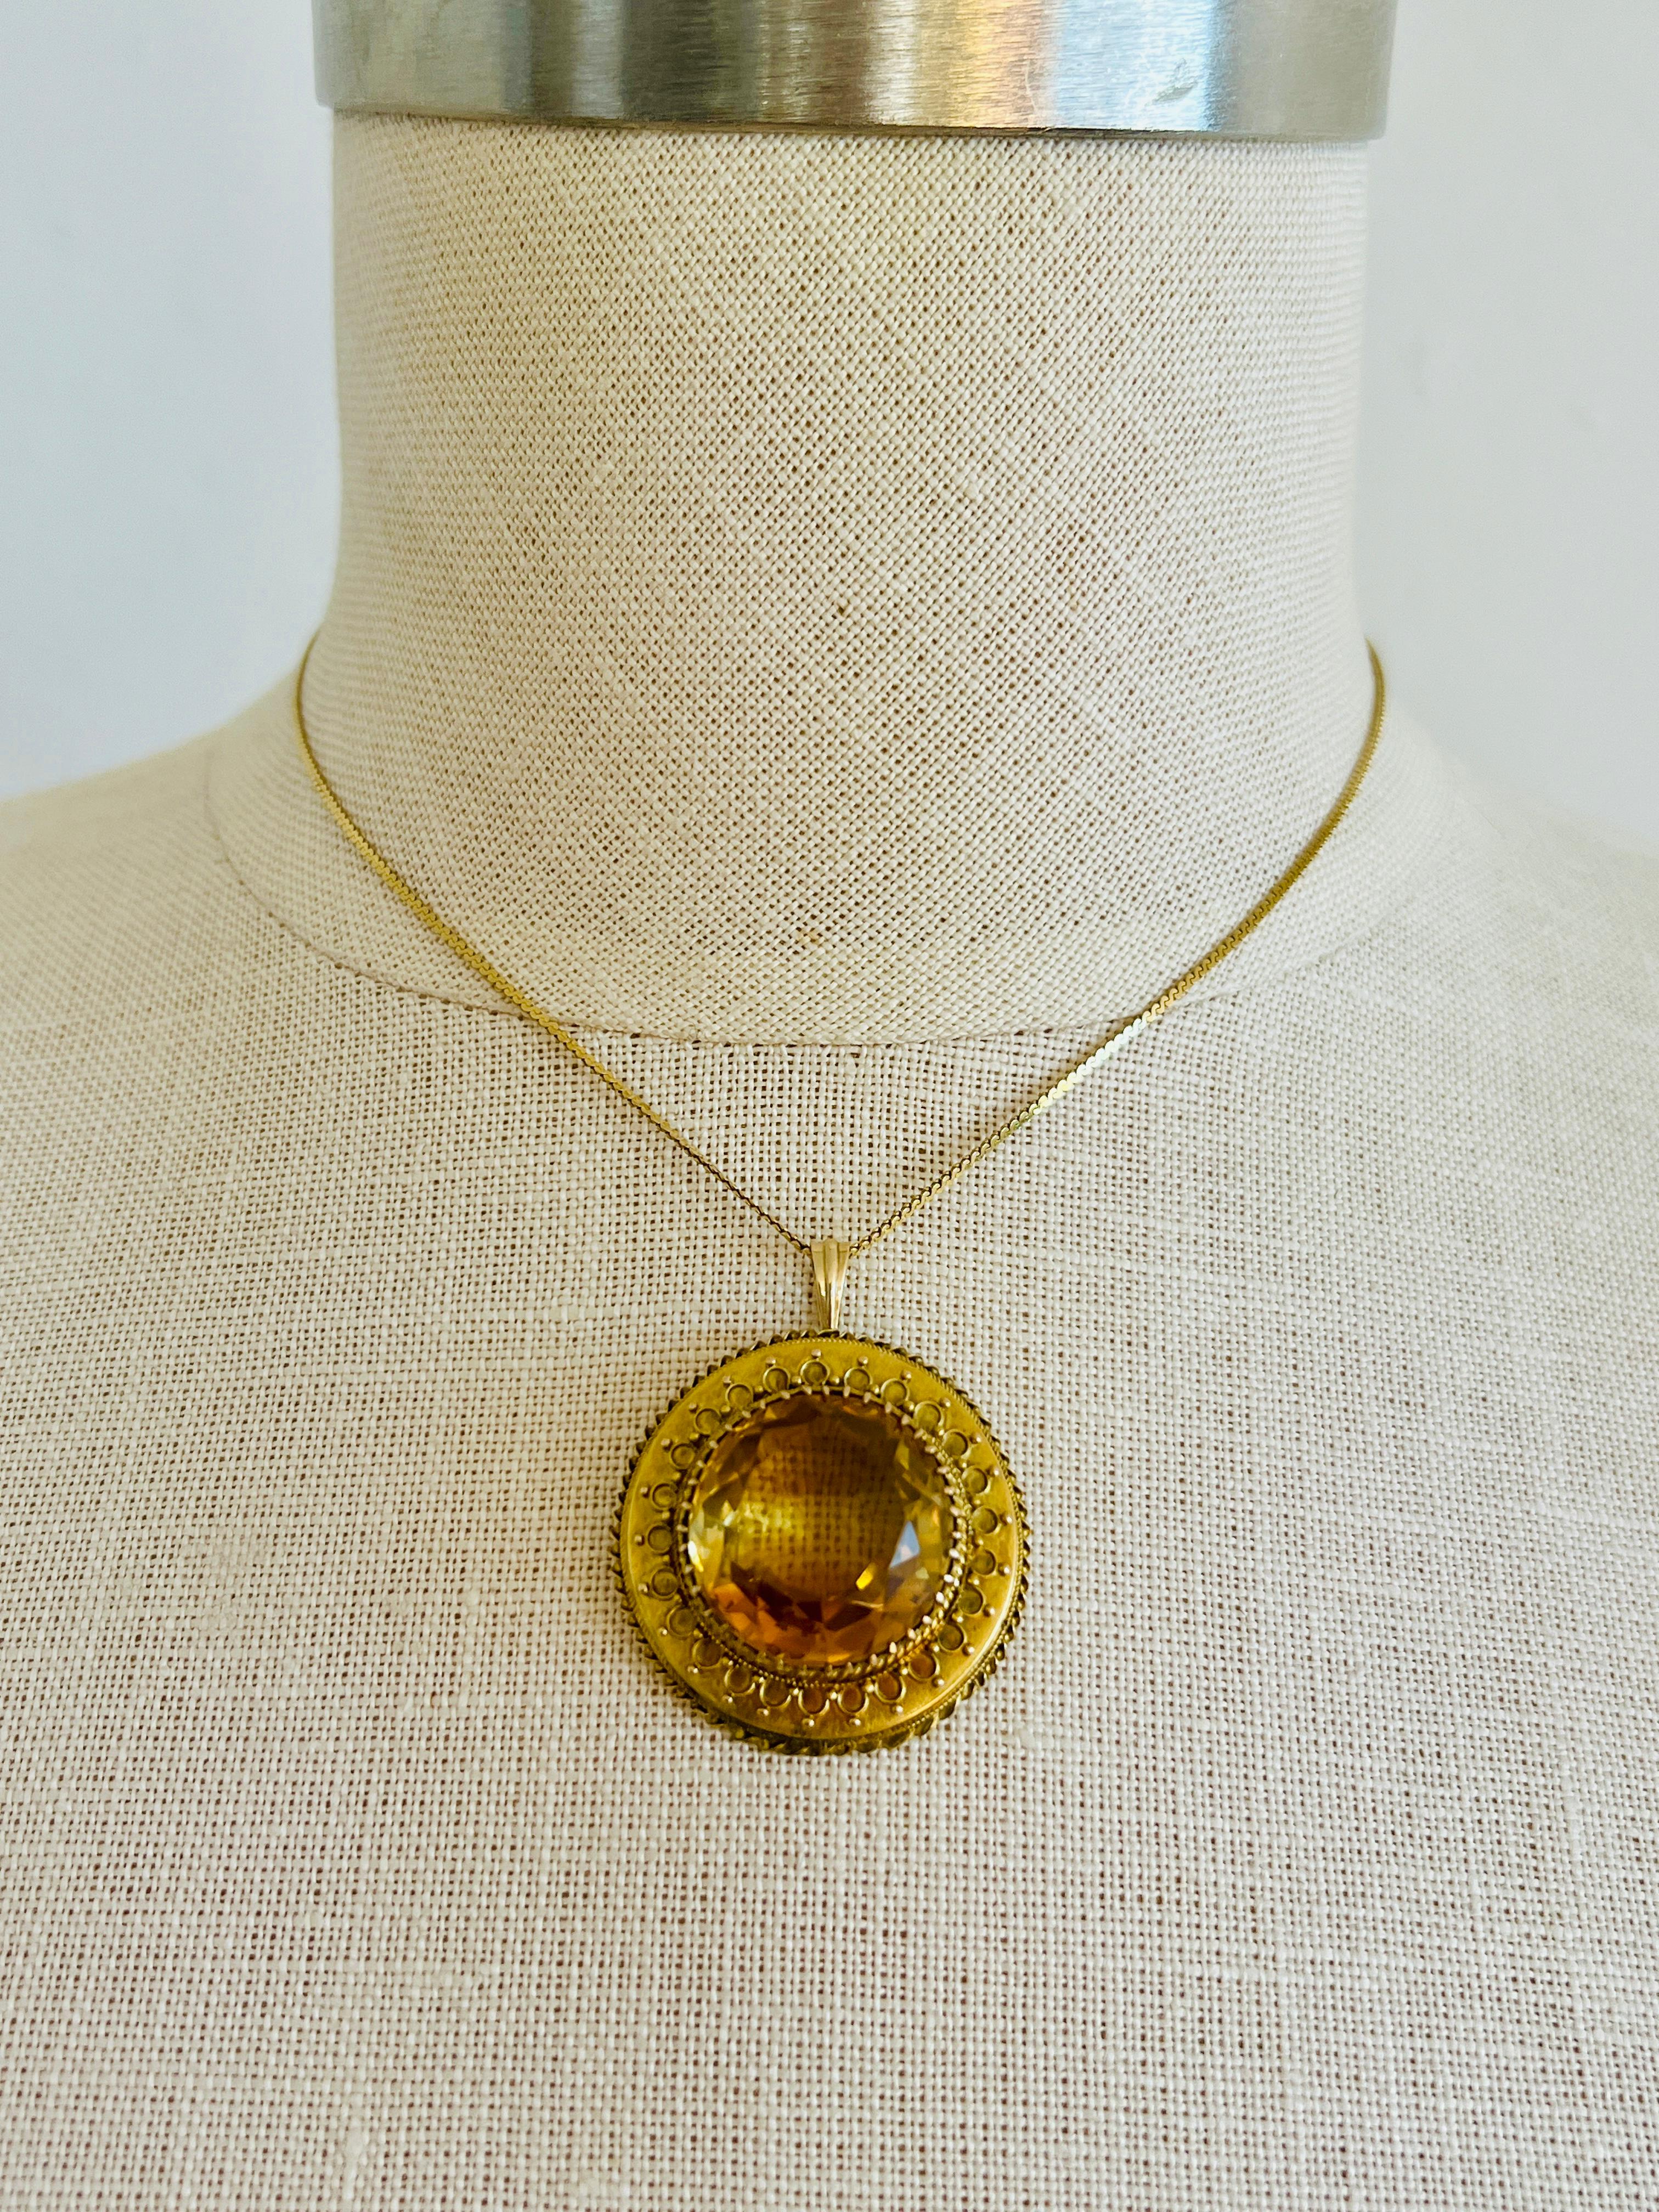 Women's Large Antique 14k Yellow Gold Citrine Quartz Necklace Pendant Vintage Round